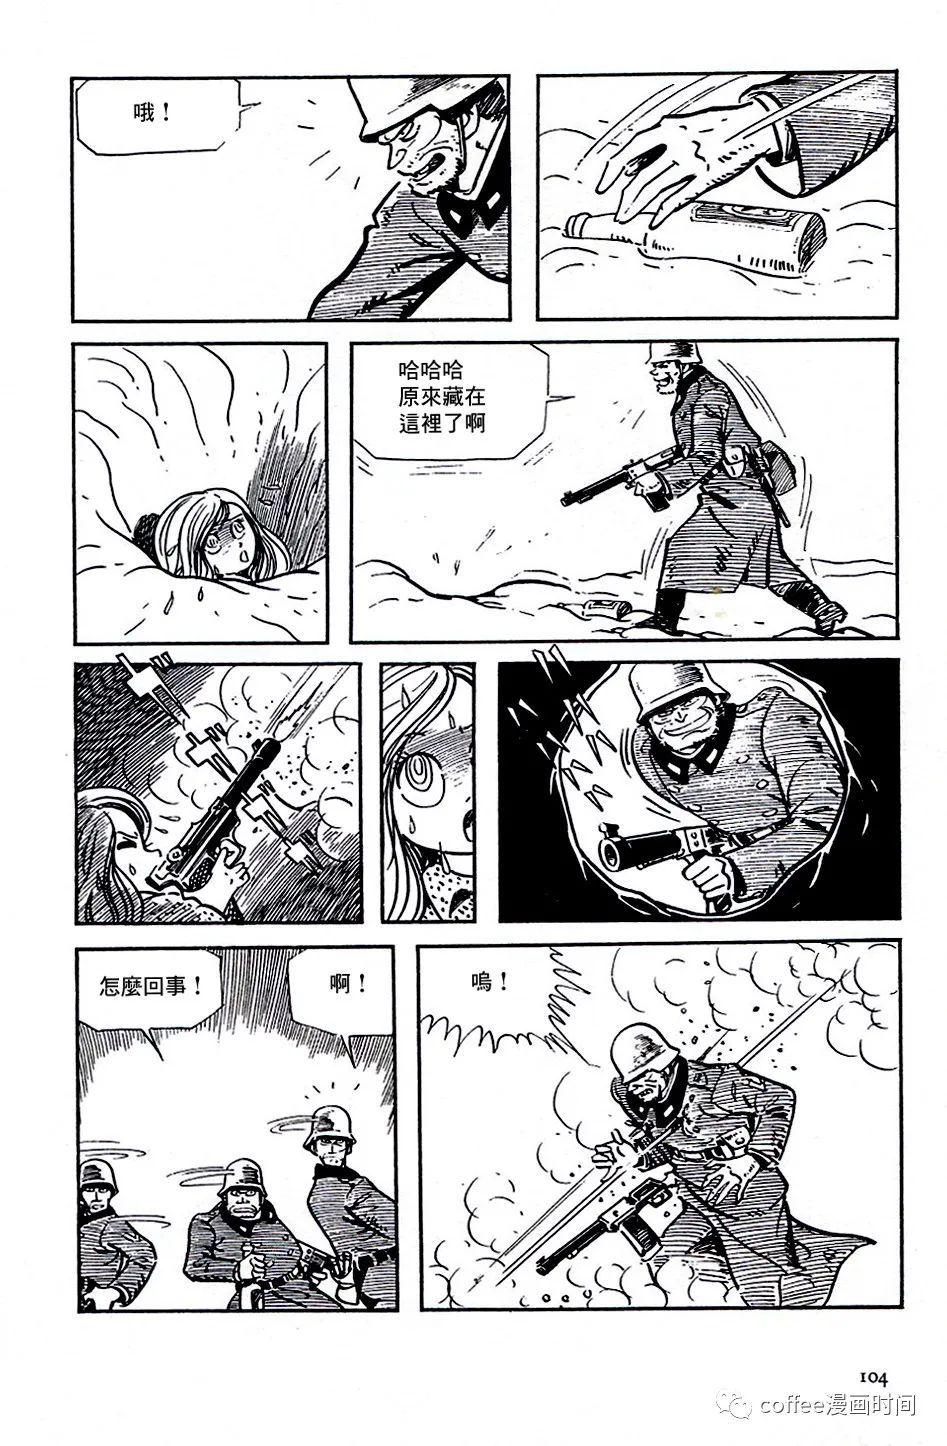 日本短篇漫畫傑作集 - 白土三平《戰爭》 - 1